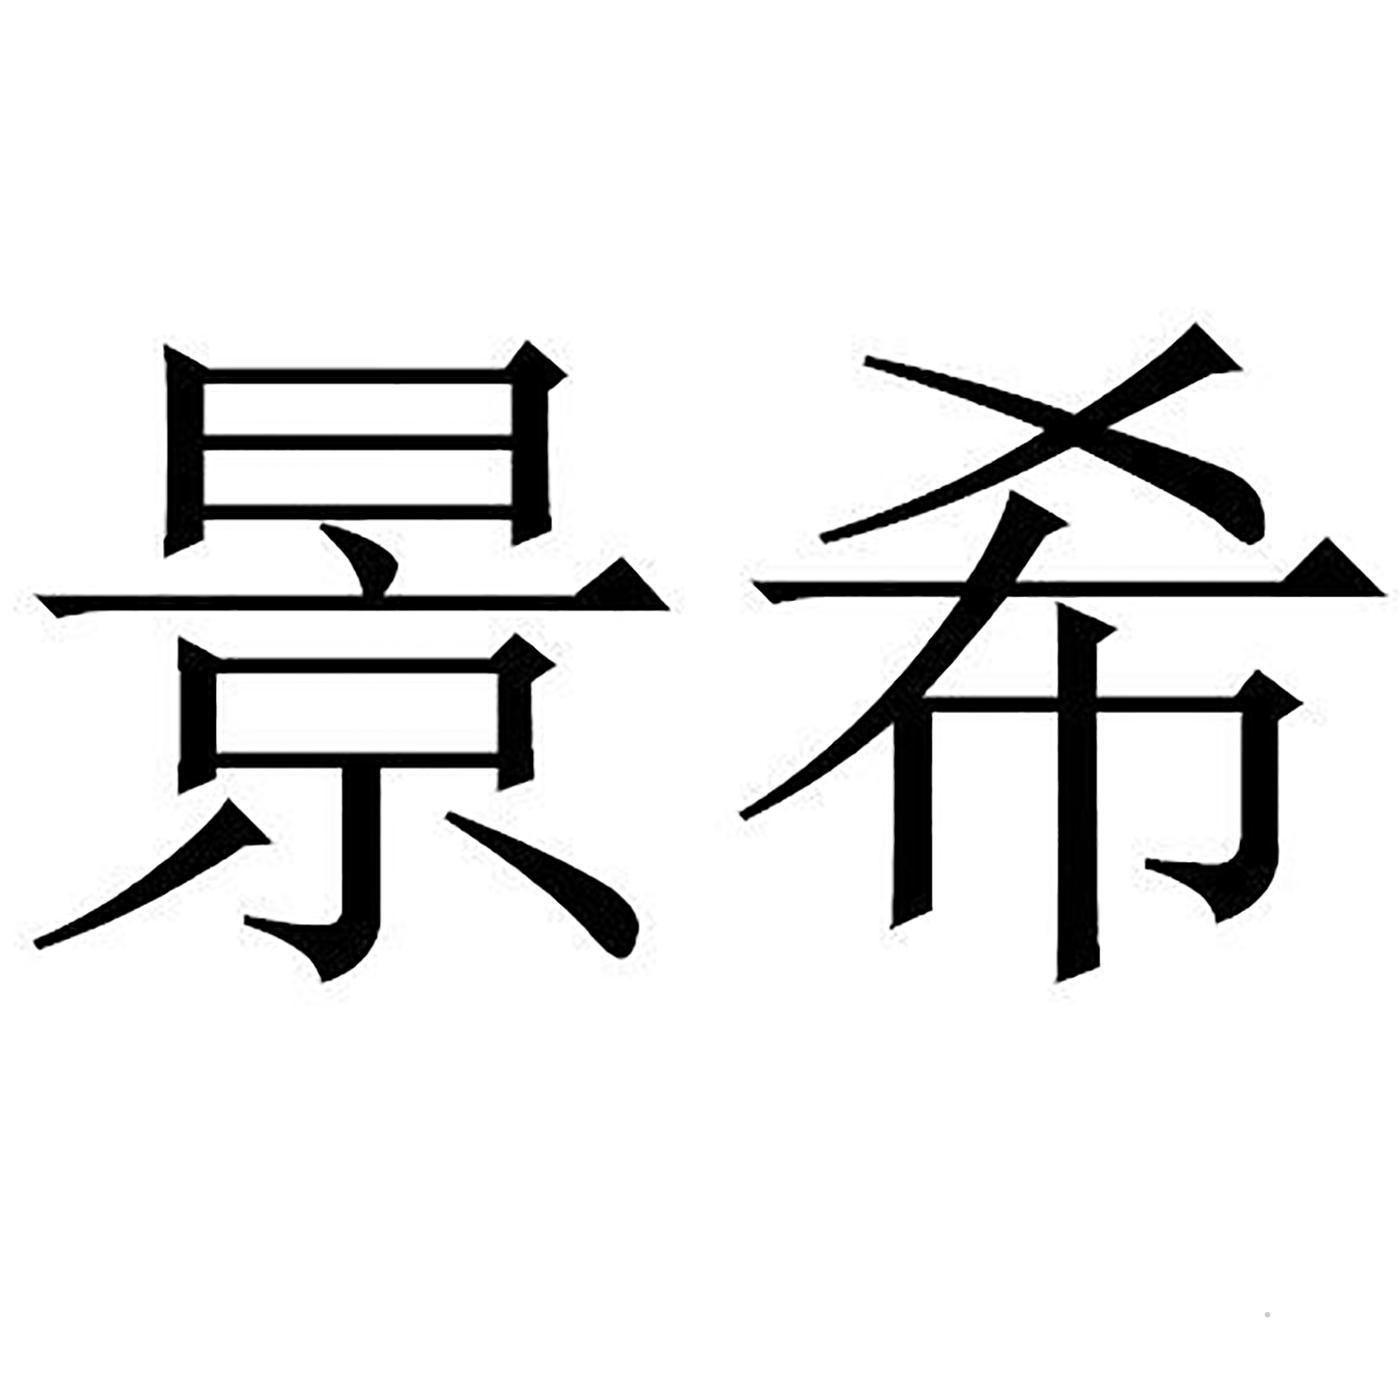 景希logo